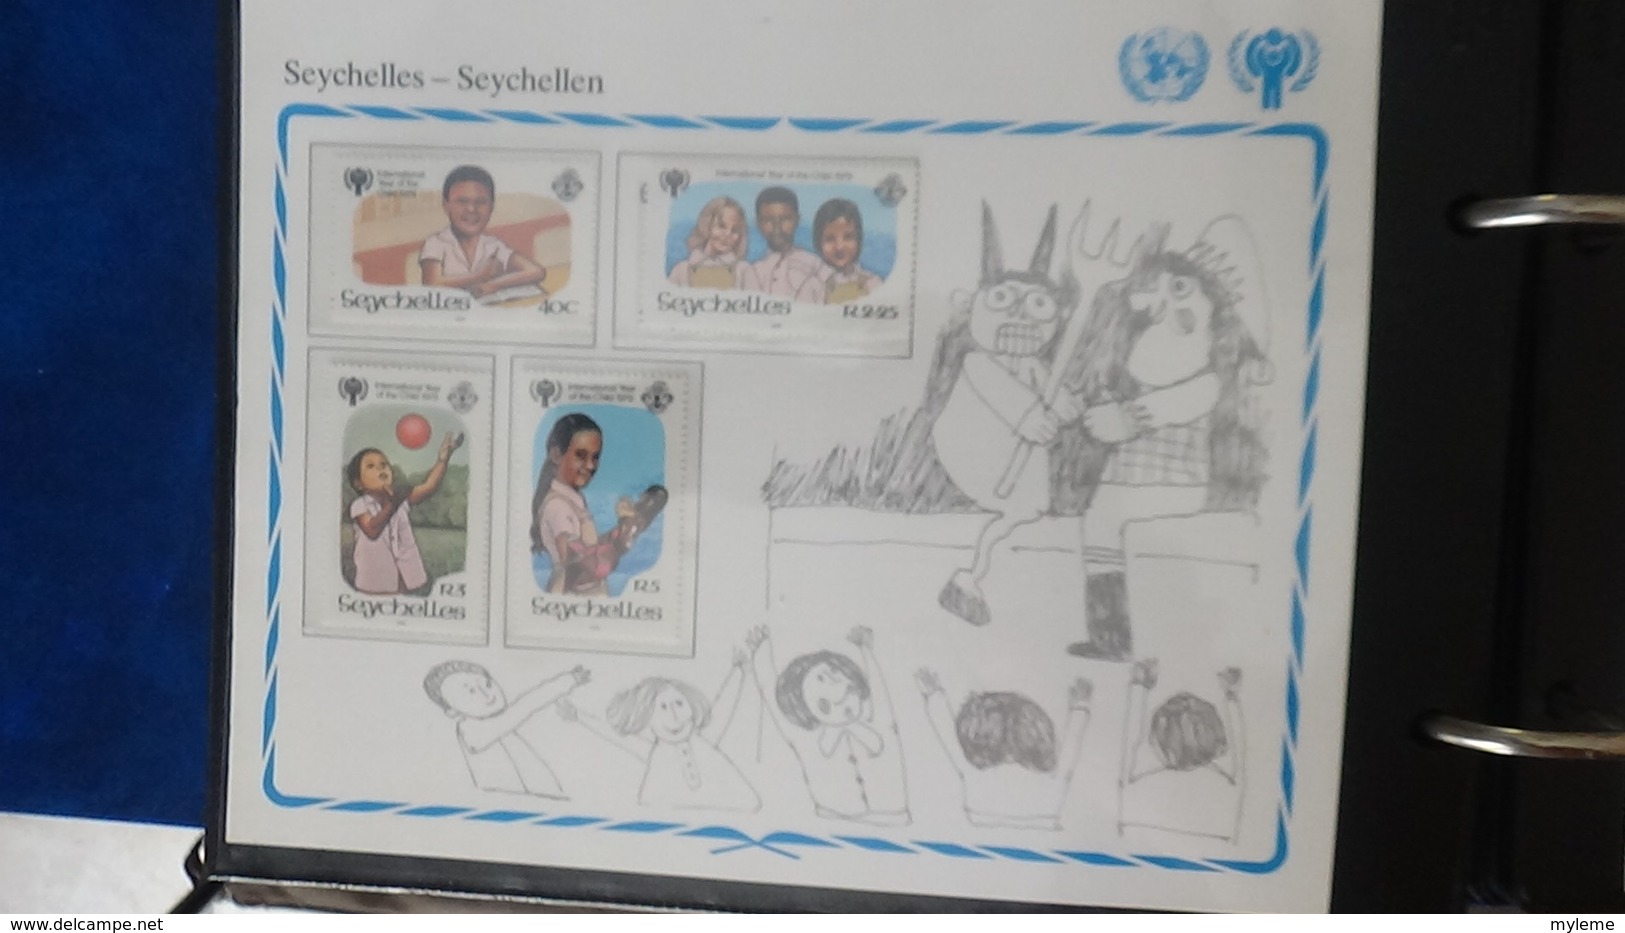 Très beau classeur UNICEF/NATIONS UNIES   avec timbres et blocs ** sur le thème de l'enfant. A saisir !!!